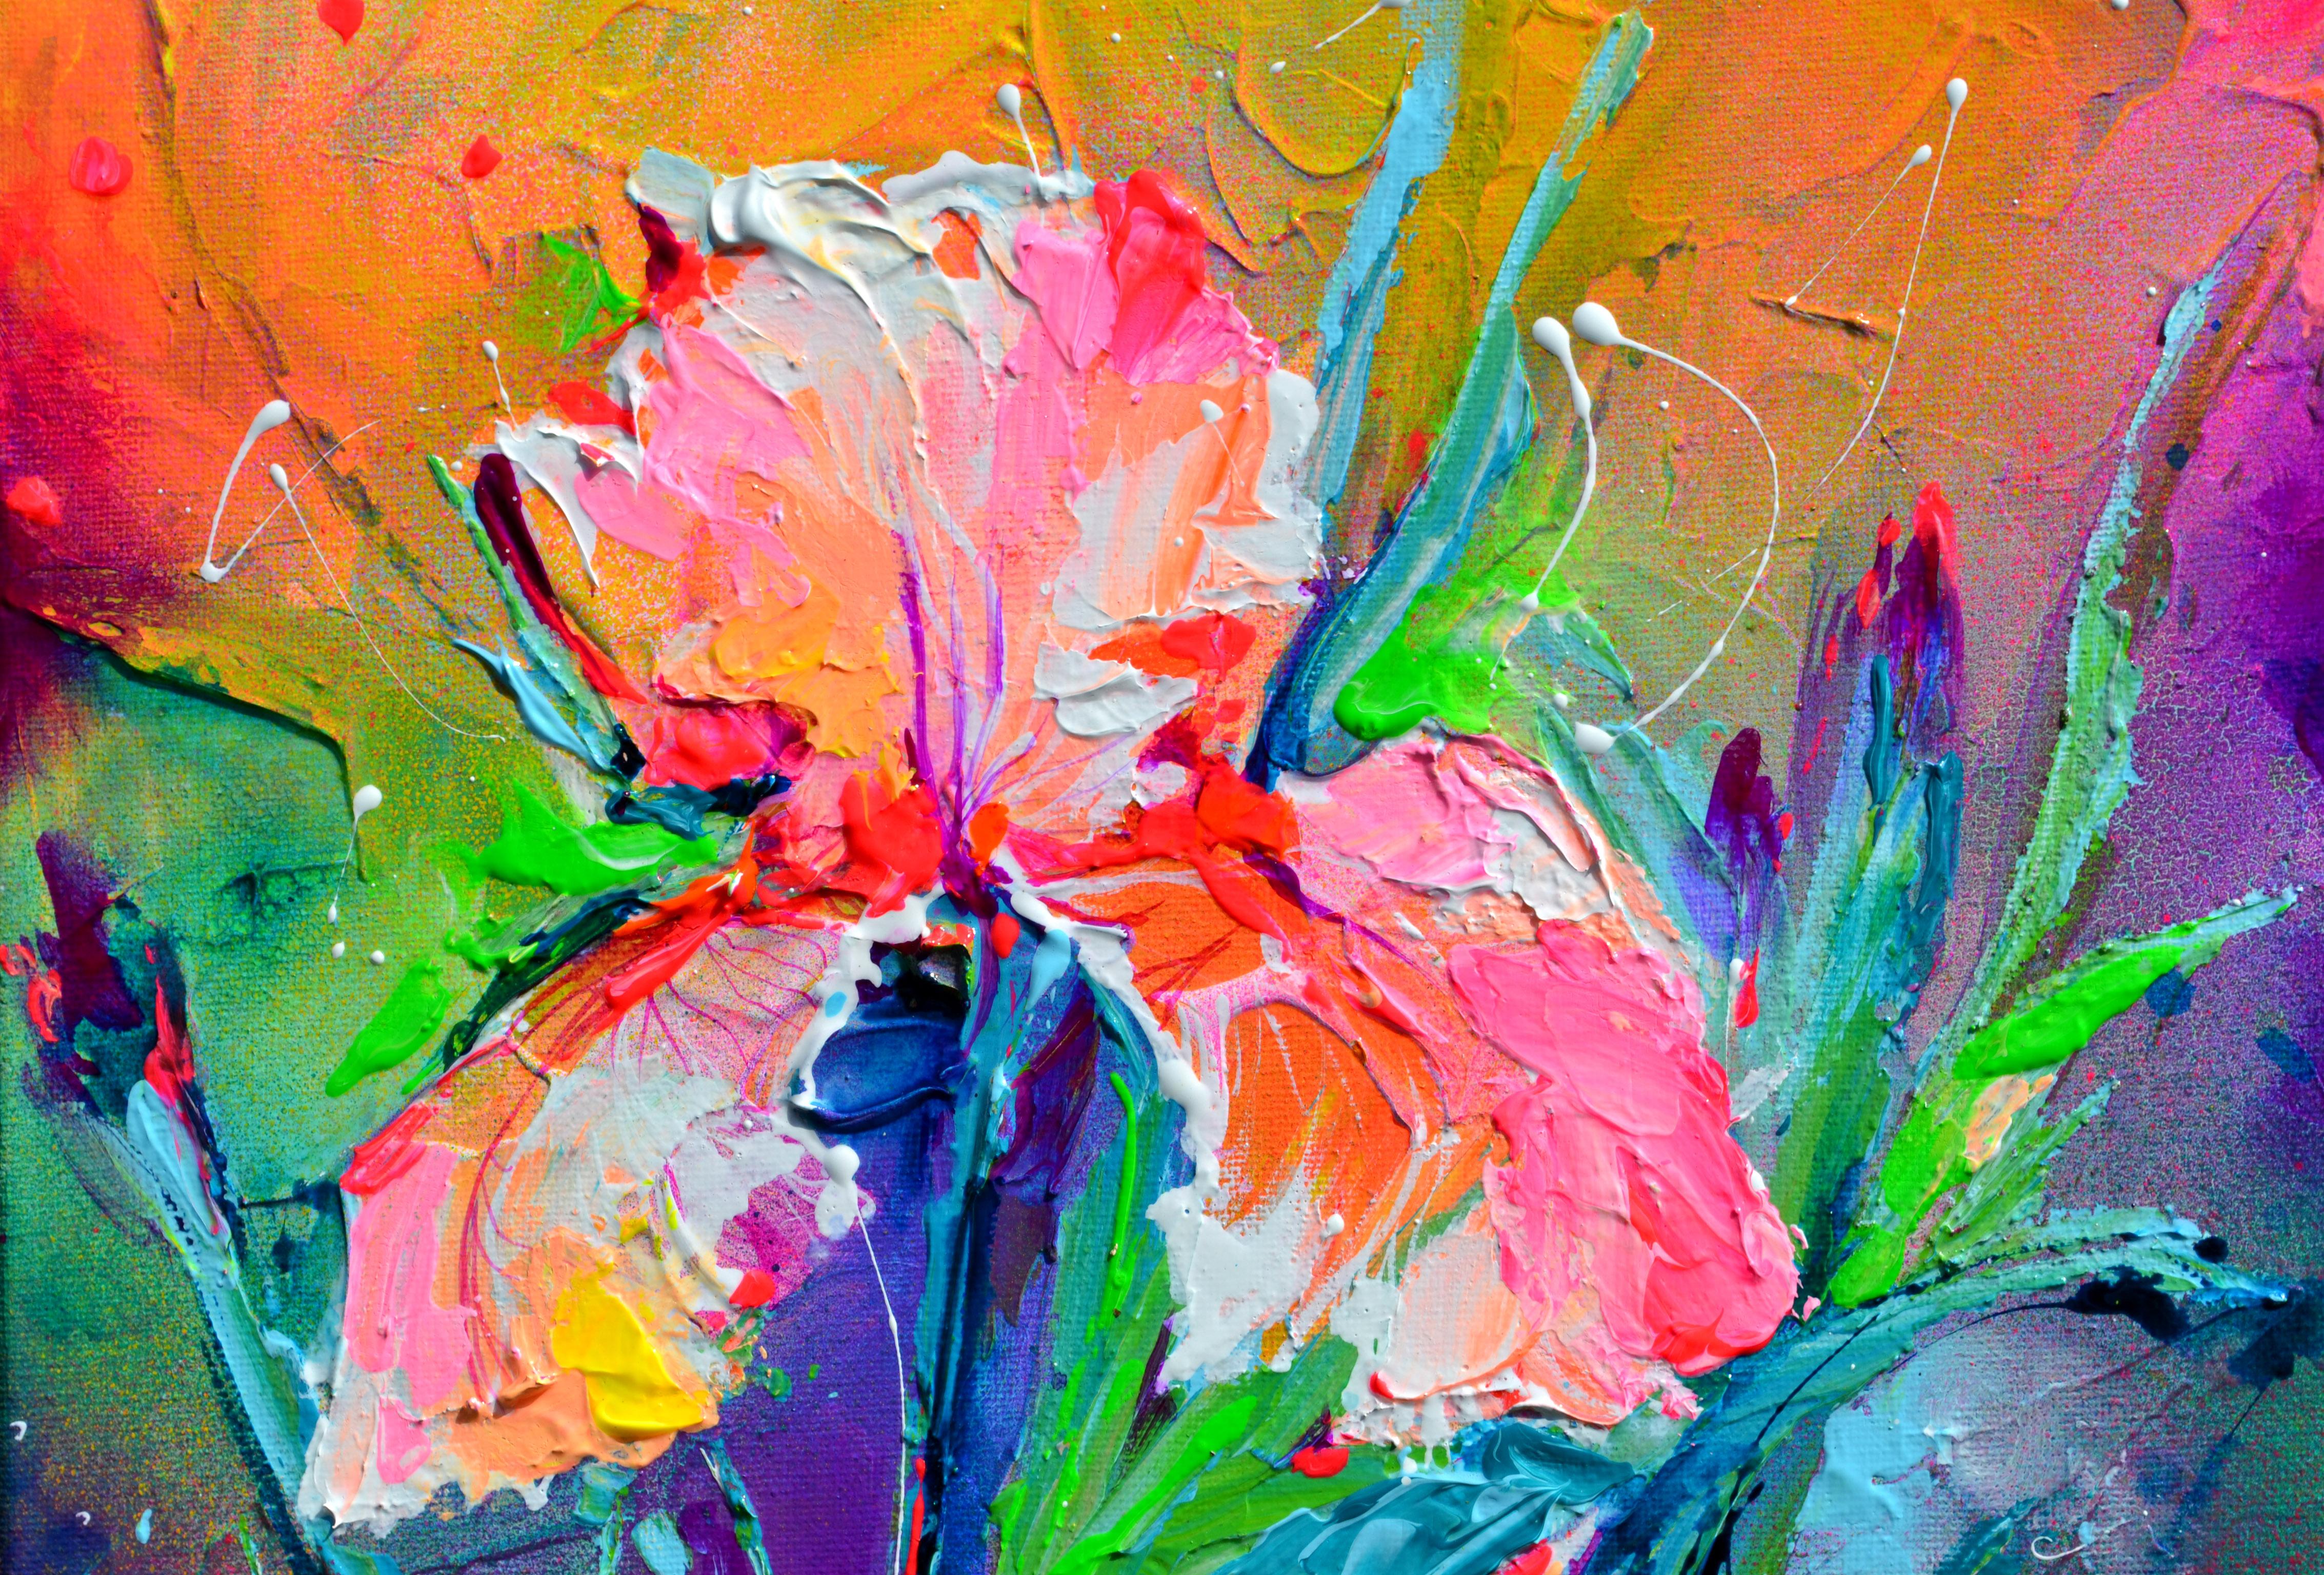 Iris-Blumenstrauß - Kleines Iris-Gemälde, Zinn-Iris-Gemälde, Textur-Blumenkunst (Impressionismus), Painting, von Soos Roxana Gabriela